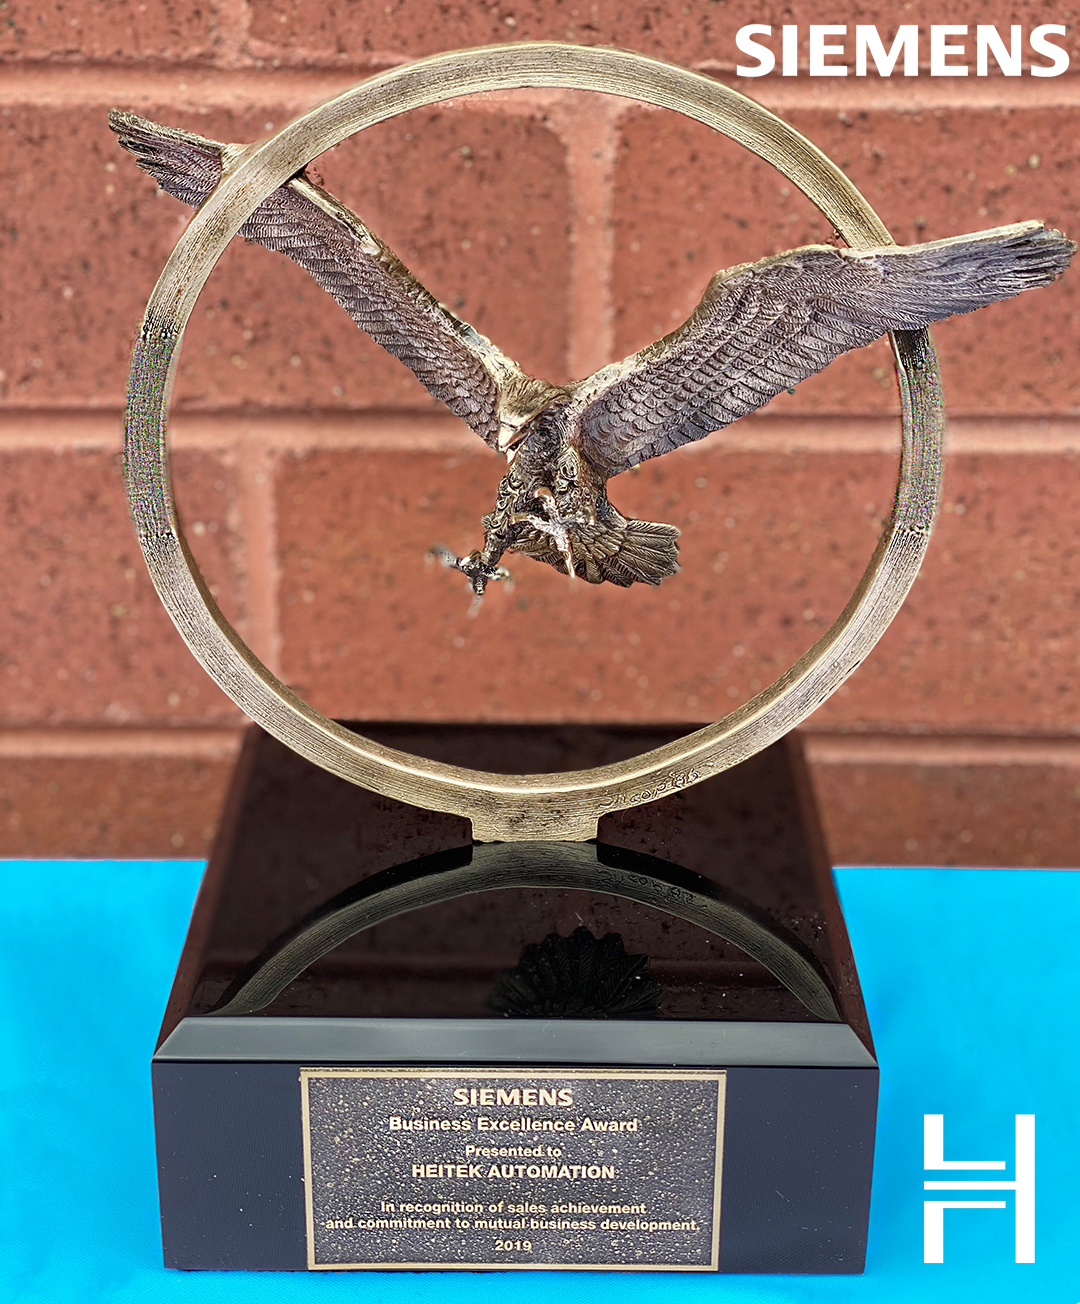 Heitek receives it's 3rd Siemens Bronze Eagle Award! Heitek Automation